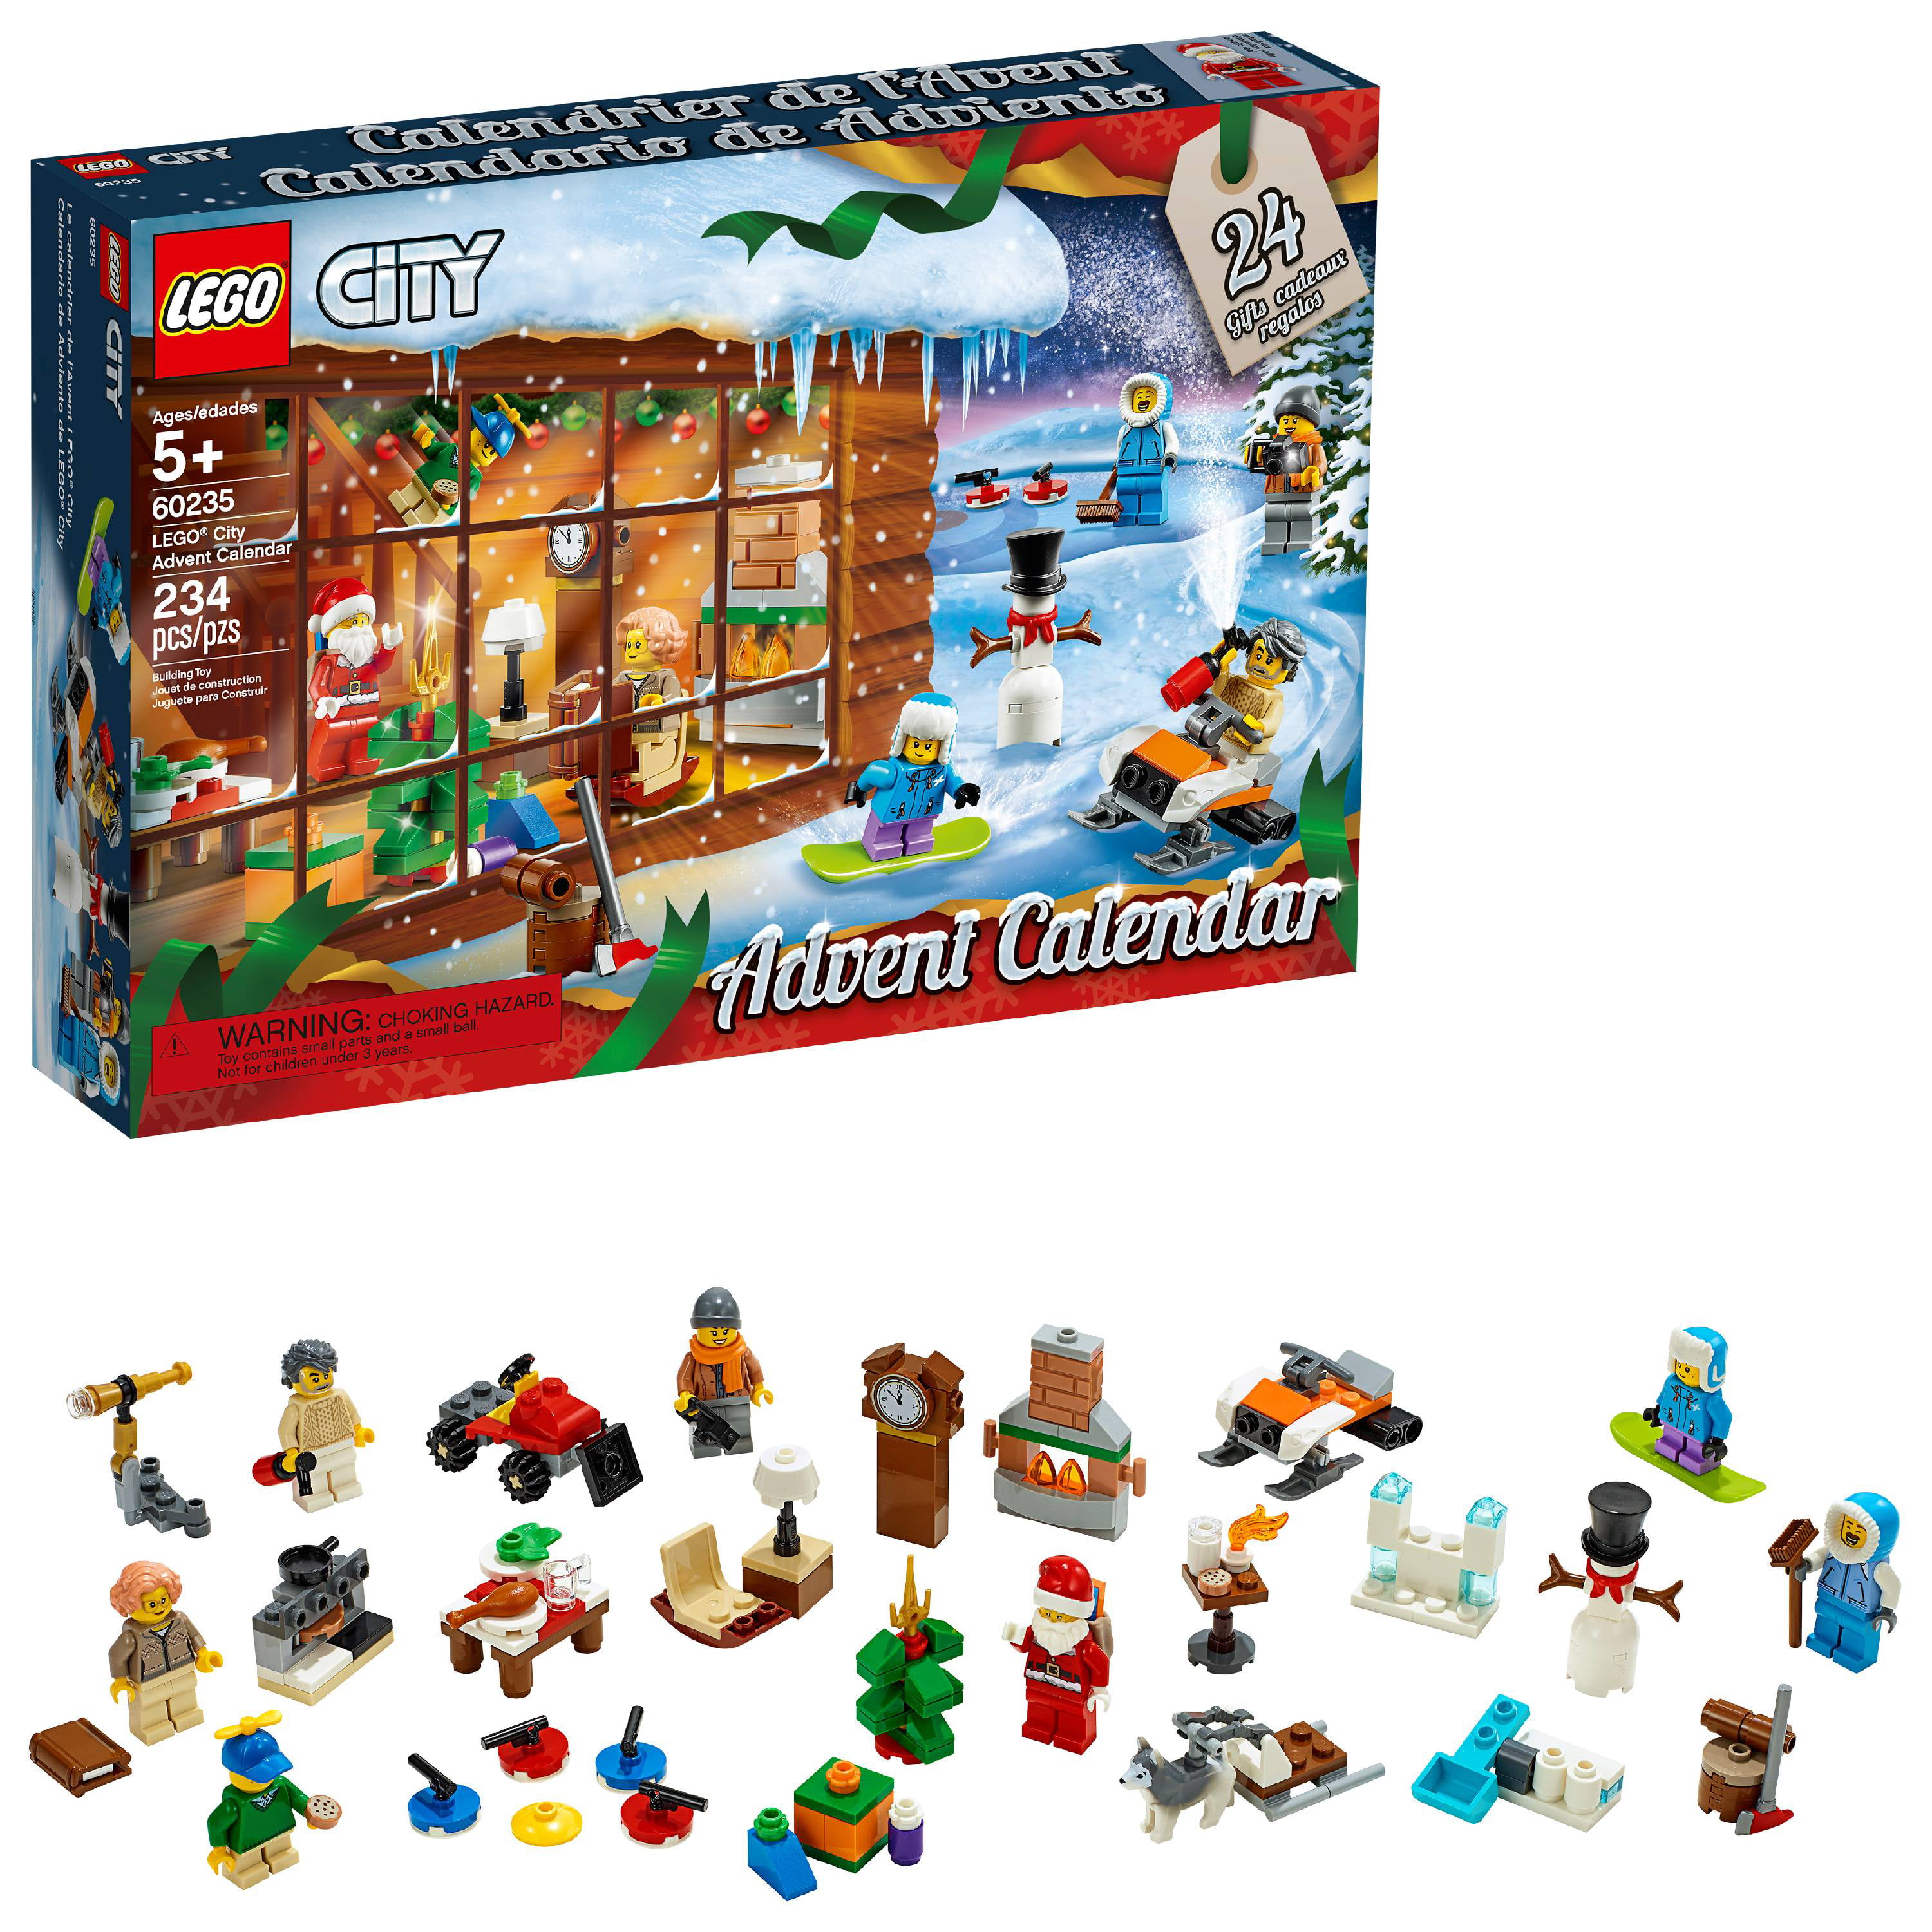 LEGO® City 2019 Advent Calendar 60235